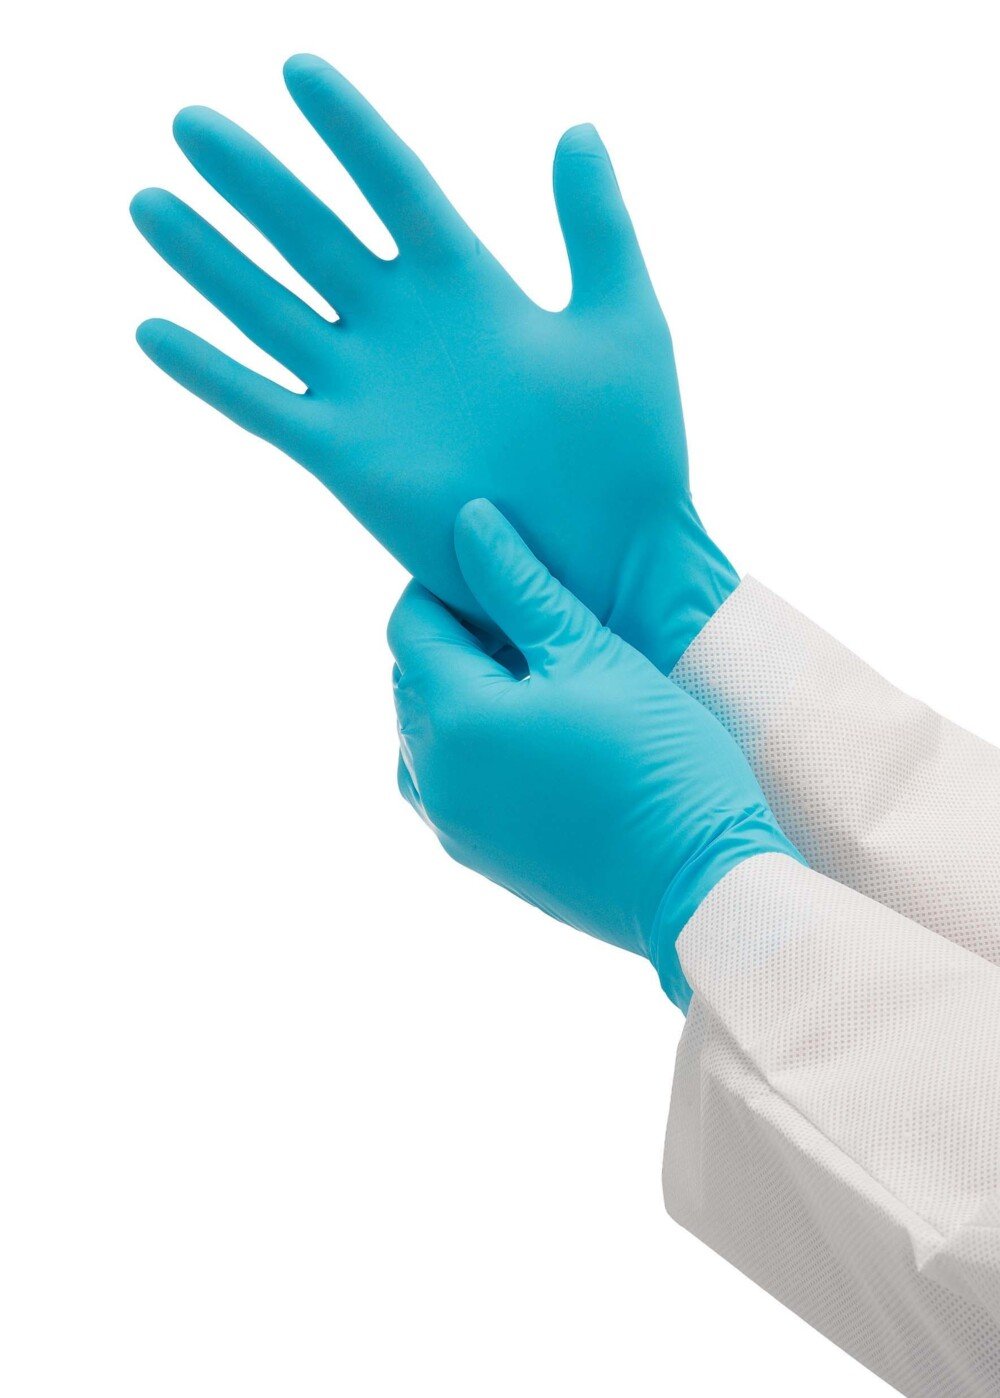 Gants ambidextres KleenGuard® G10 Nitrile 57371 - Bleu, S, 10 x 100 (1 000 gants) - 57371